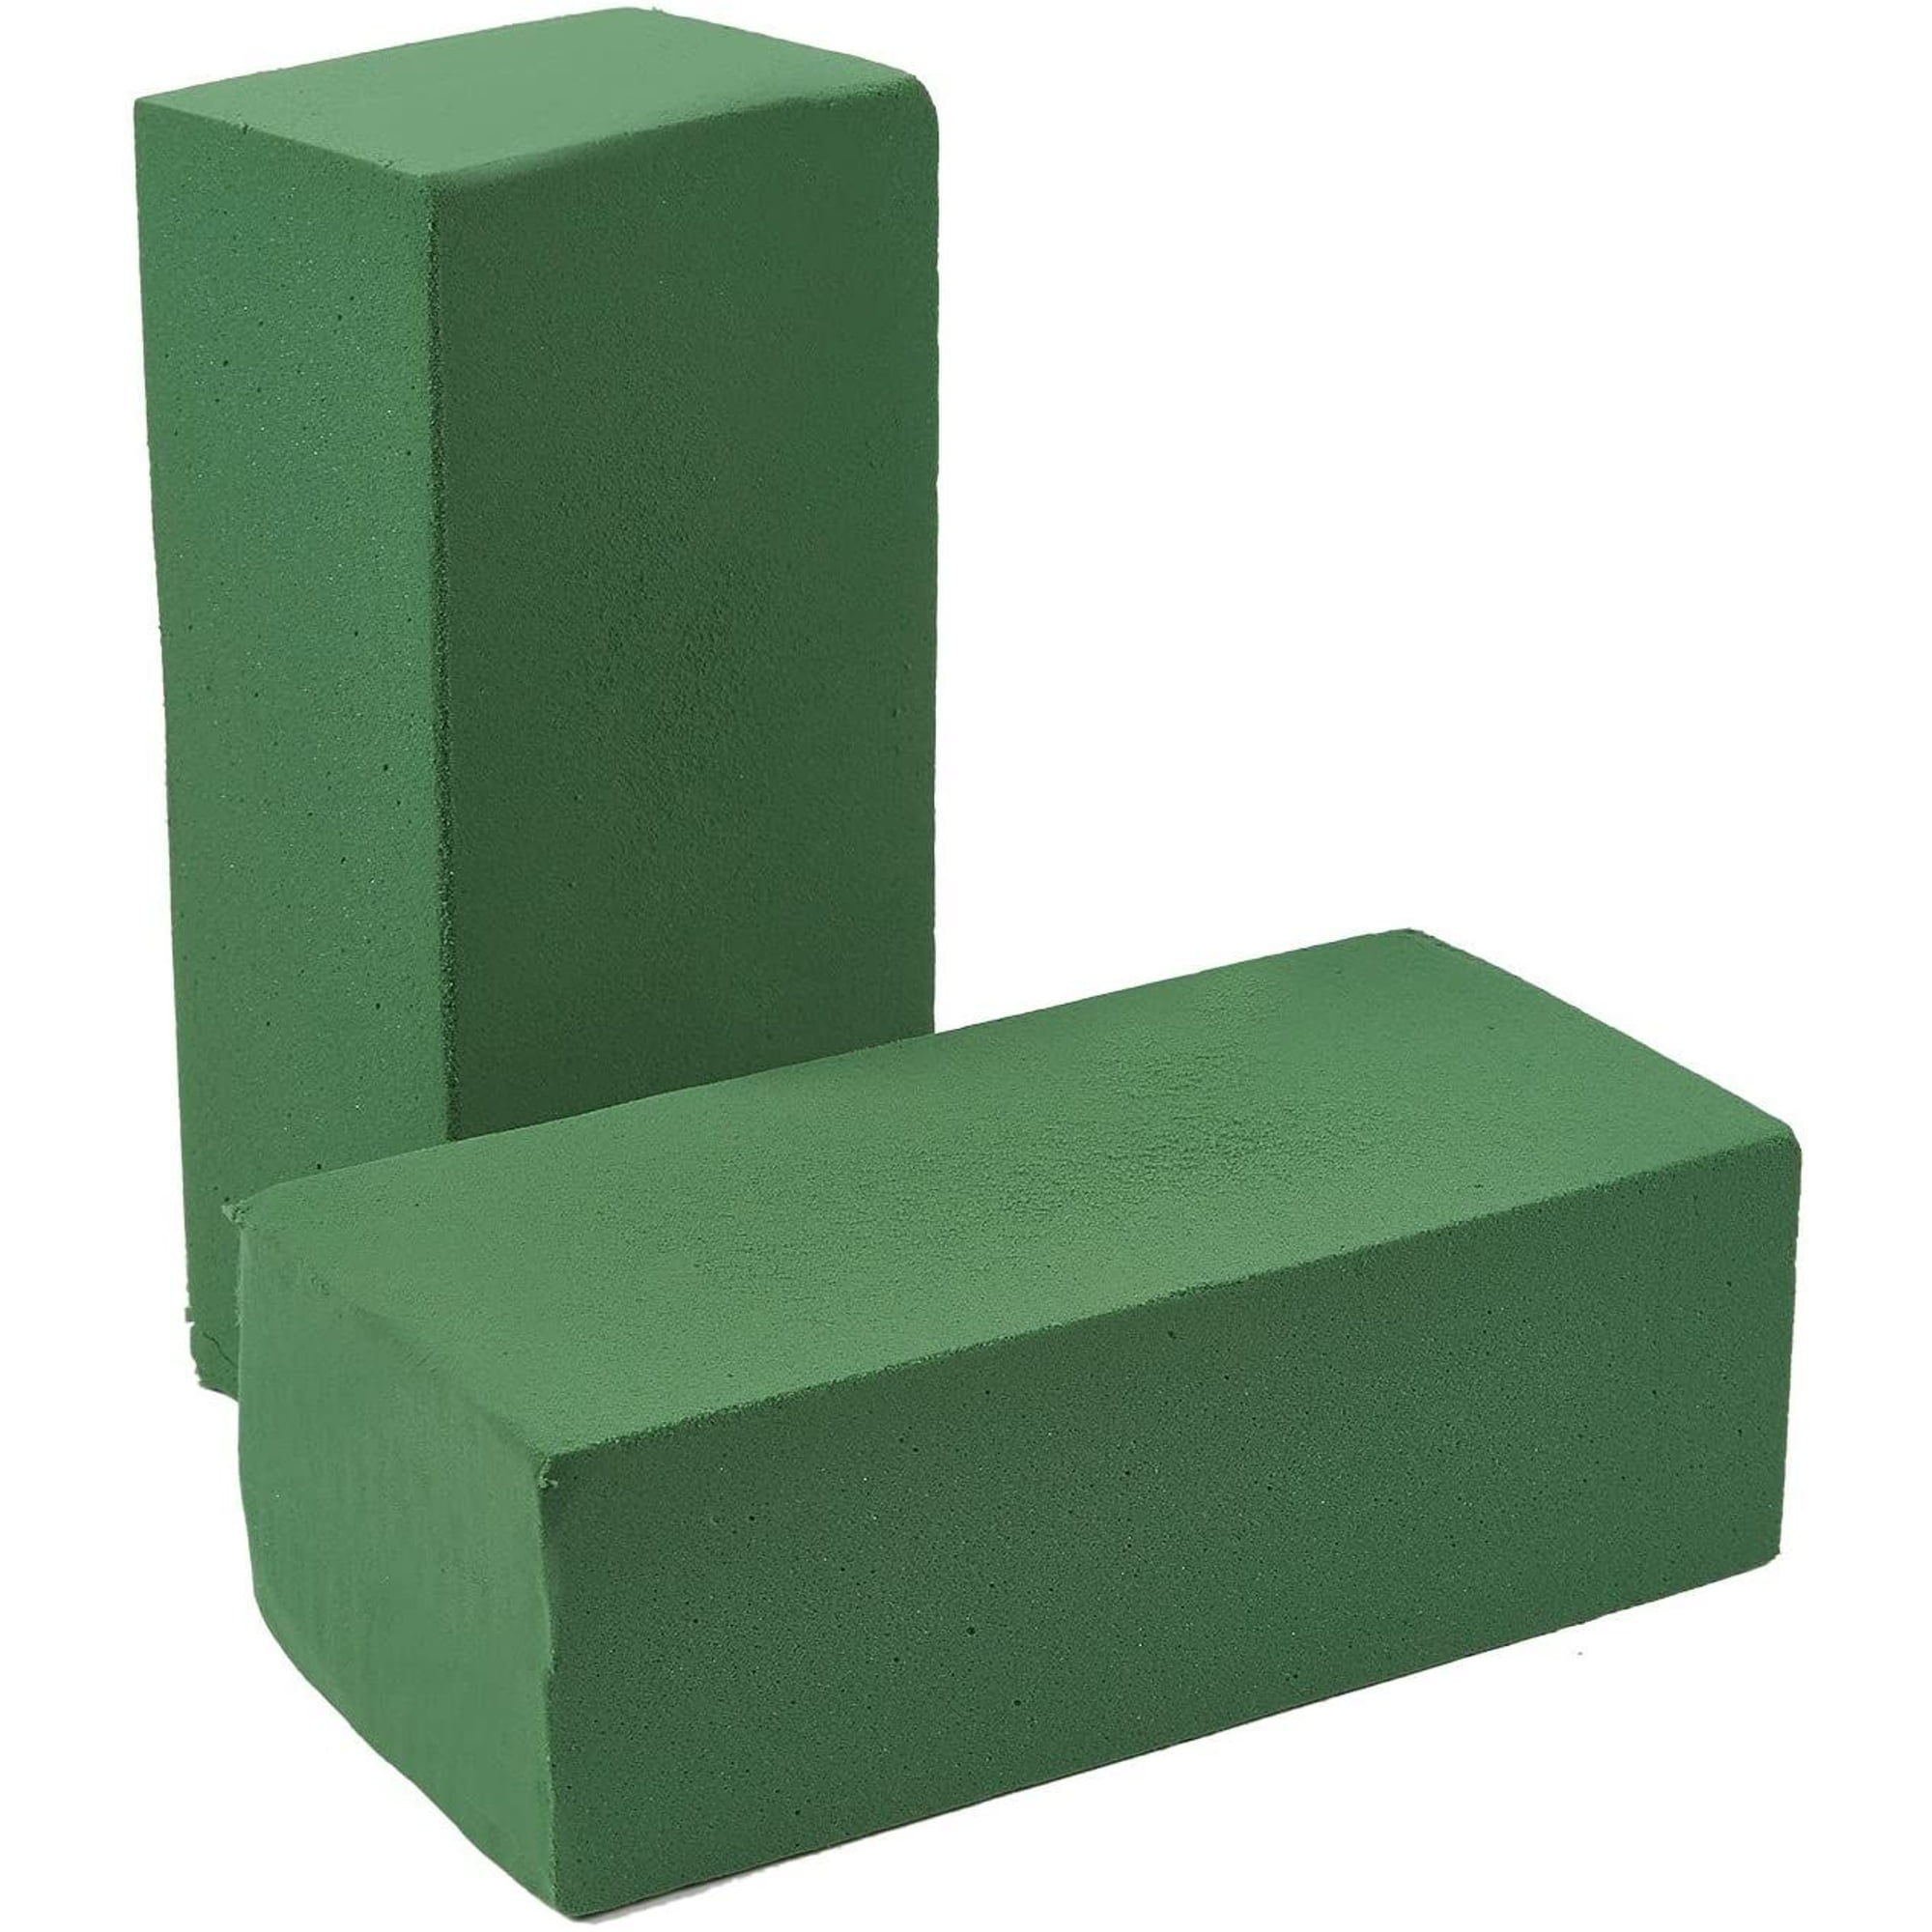 Floral Foam - Floral Craft Green Foam Block, 2.8x3.8x3.8 in. - 6 Pack